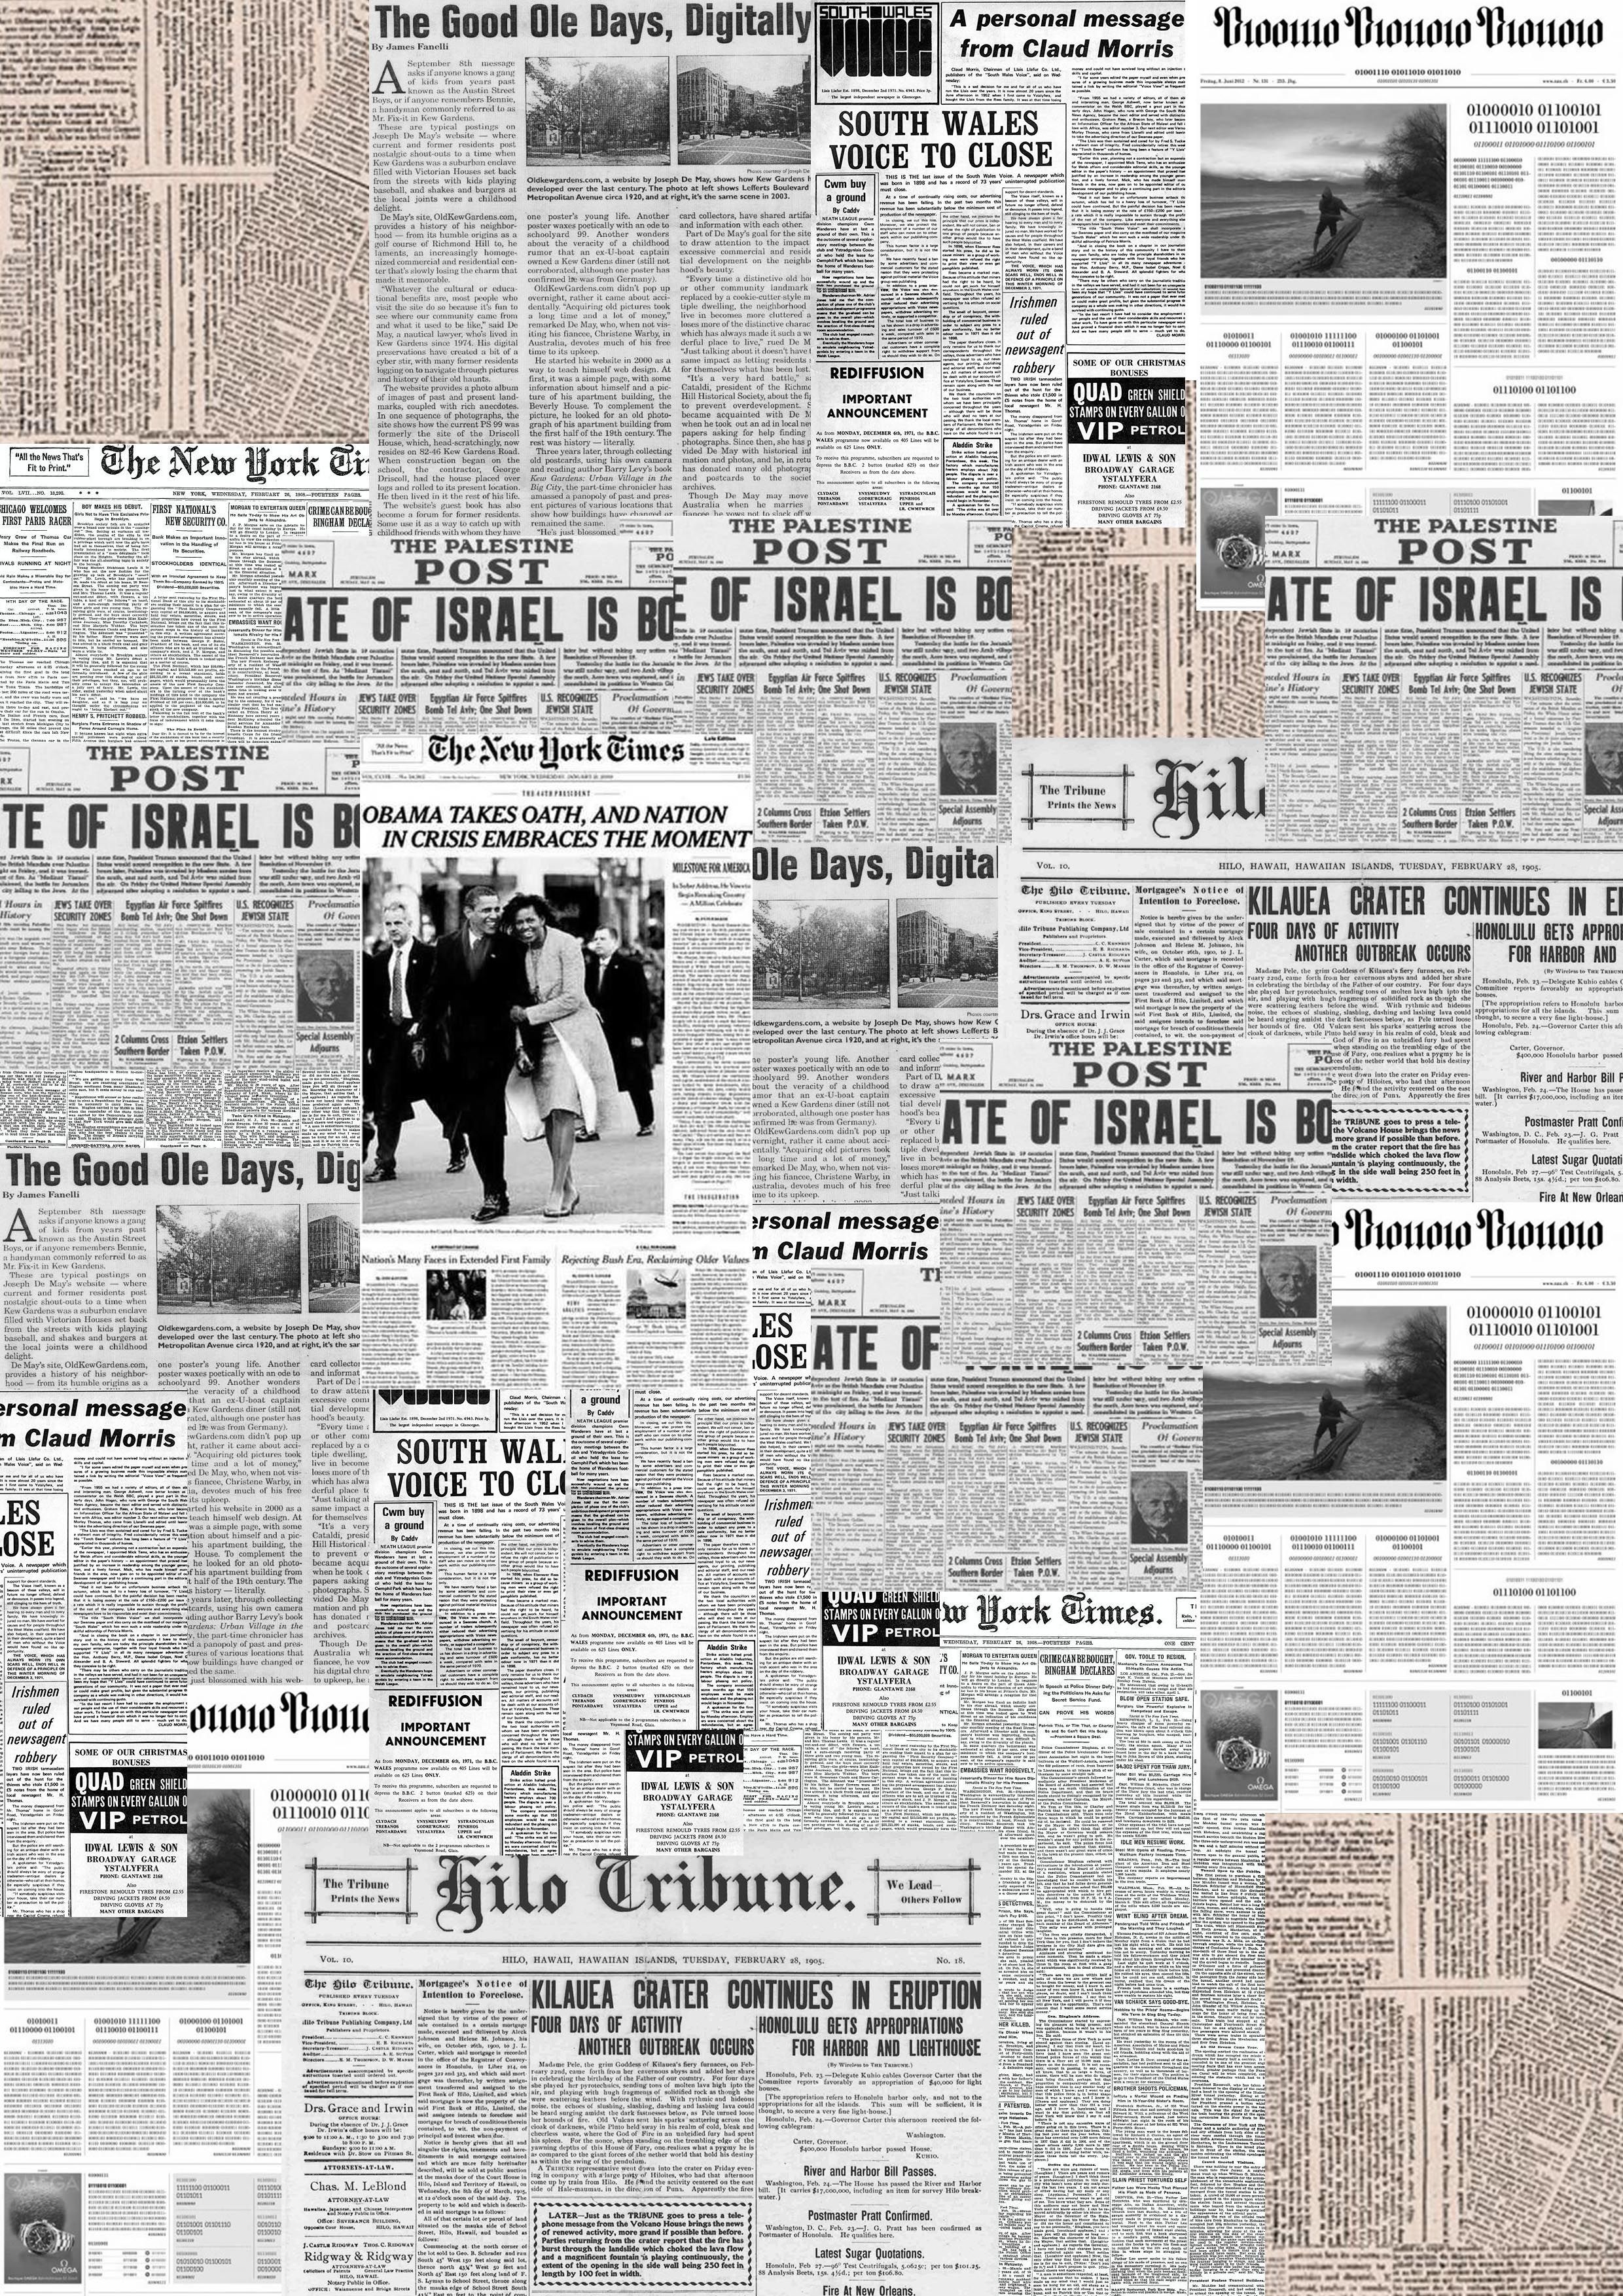 newspaper wallpaper,newsprint,text,newspaper,wall,brickwork